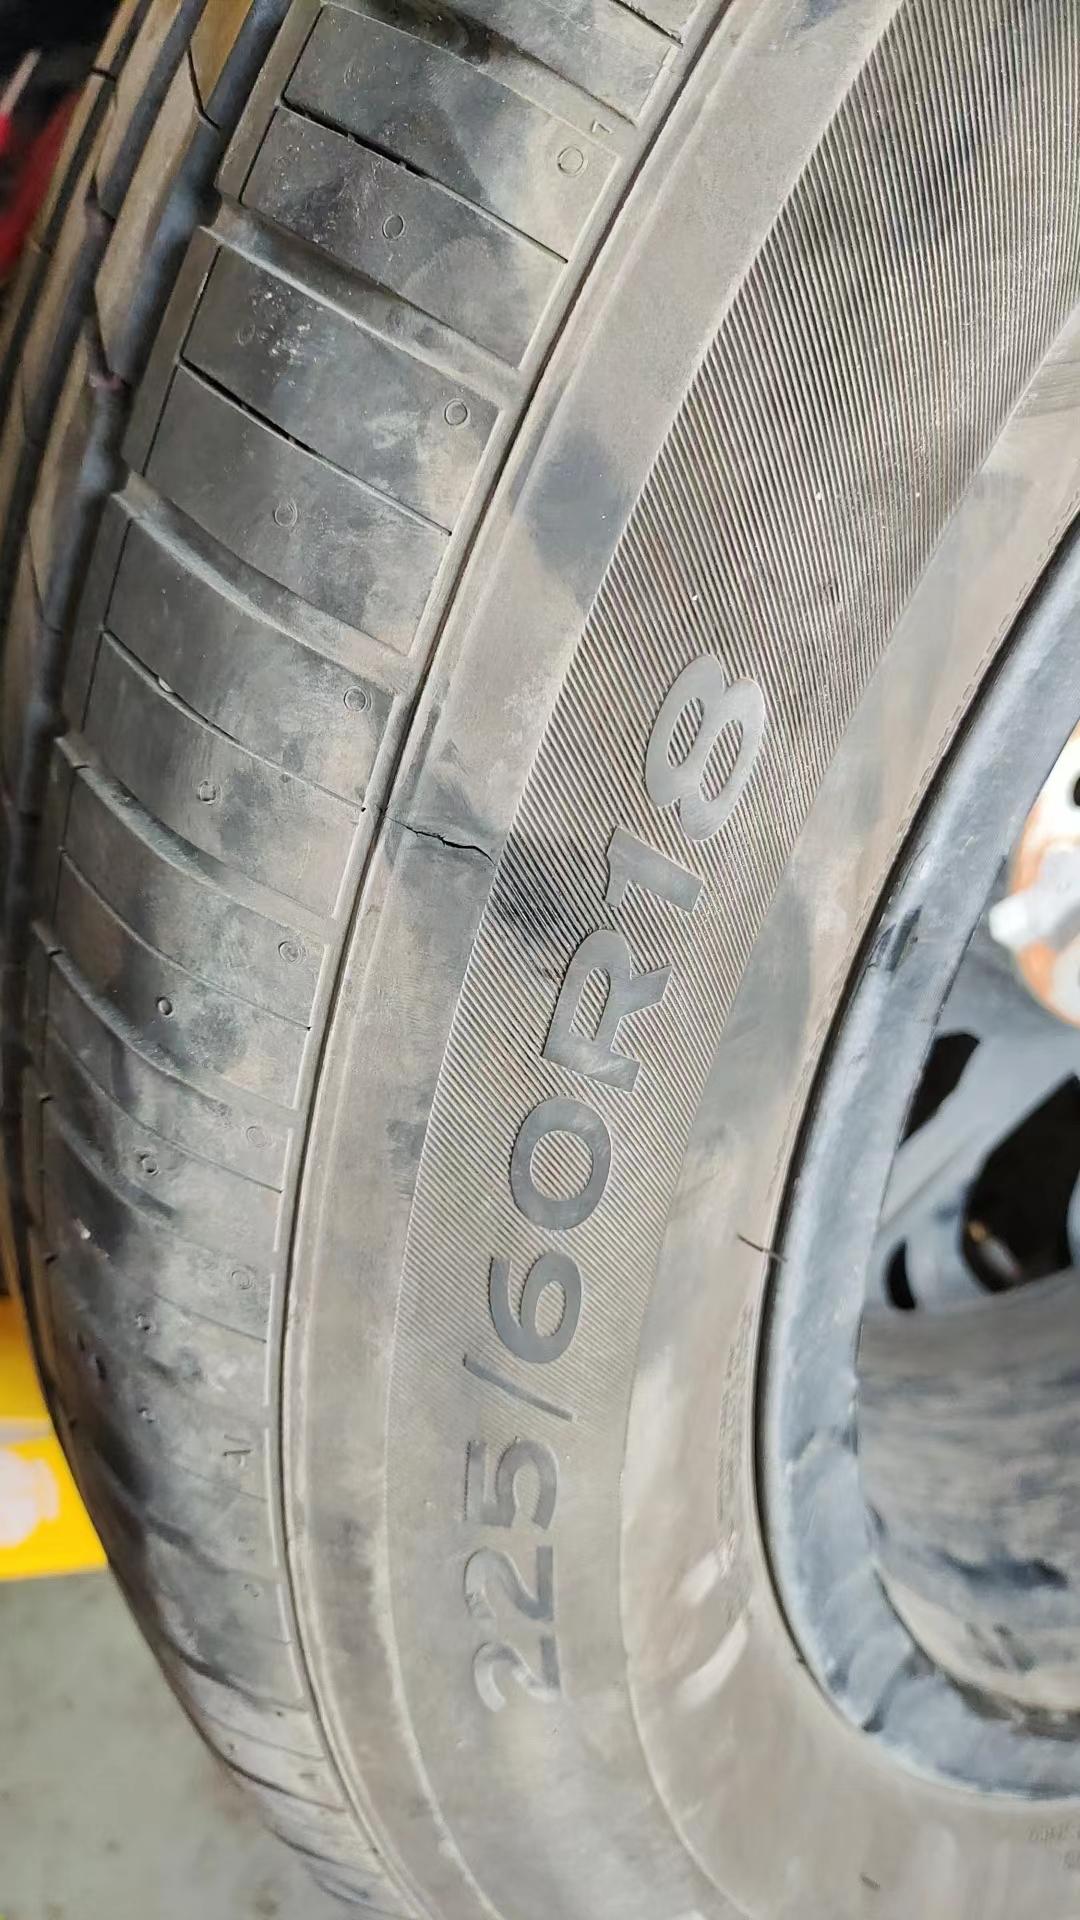 长安CS75 PLUS 今年2月份买车长安二代75p目前2500公里轮胎暴胎厂家说过质保期